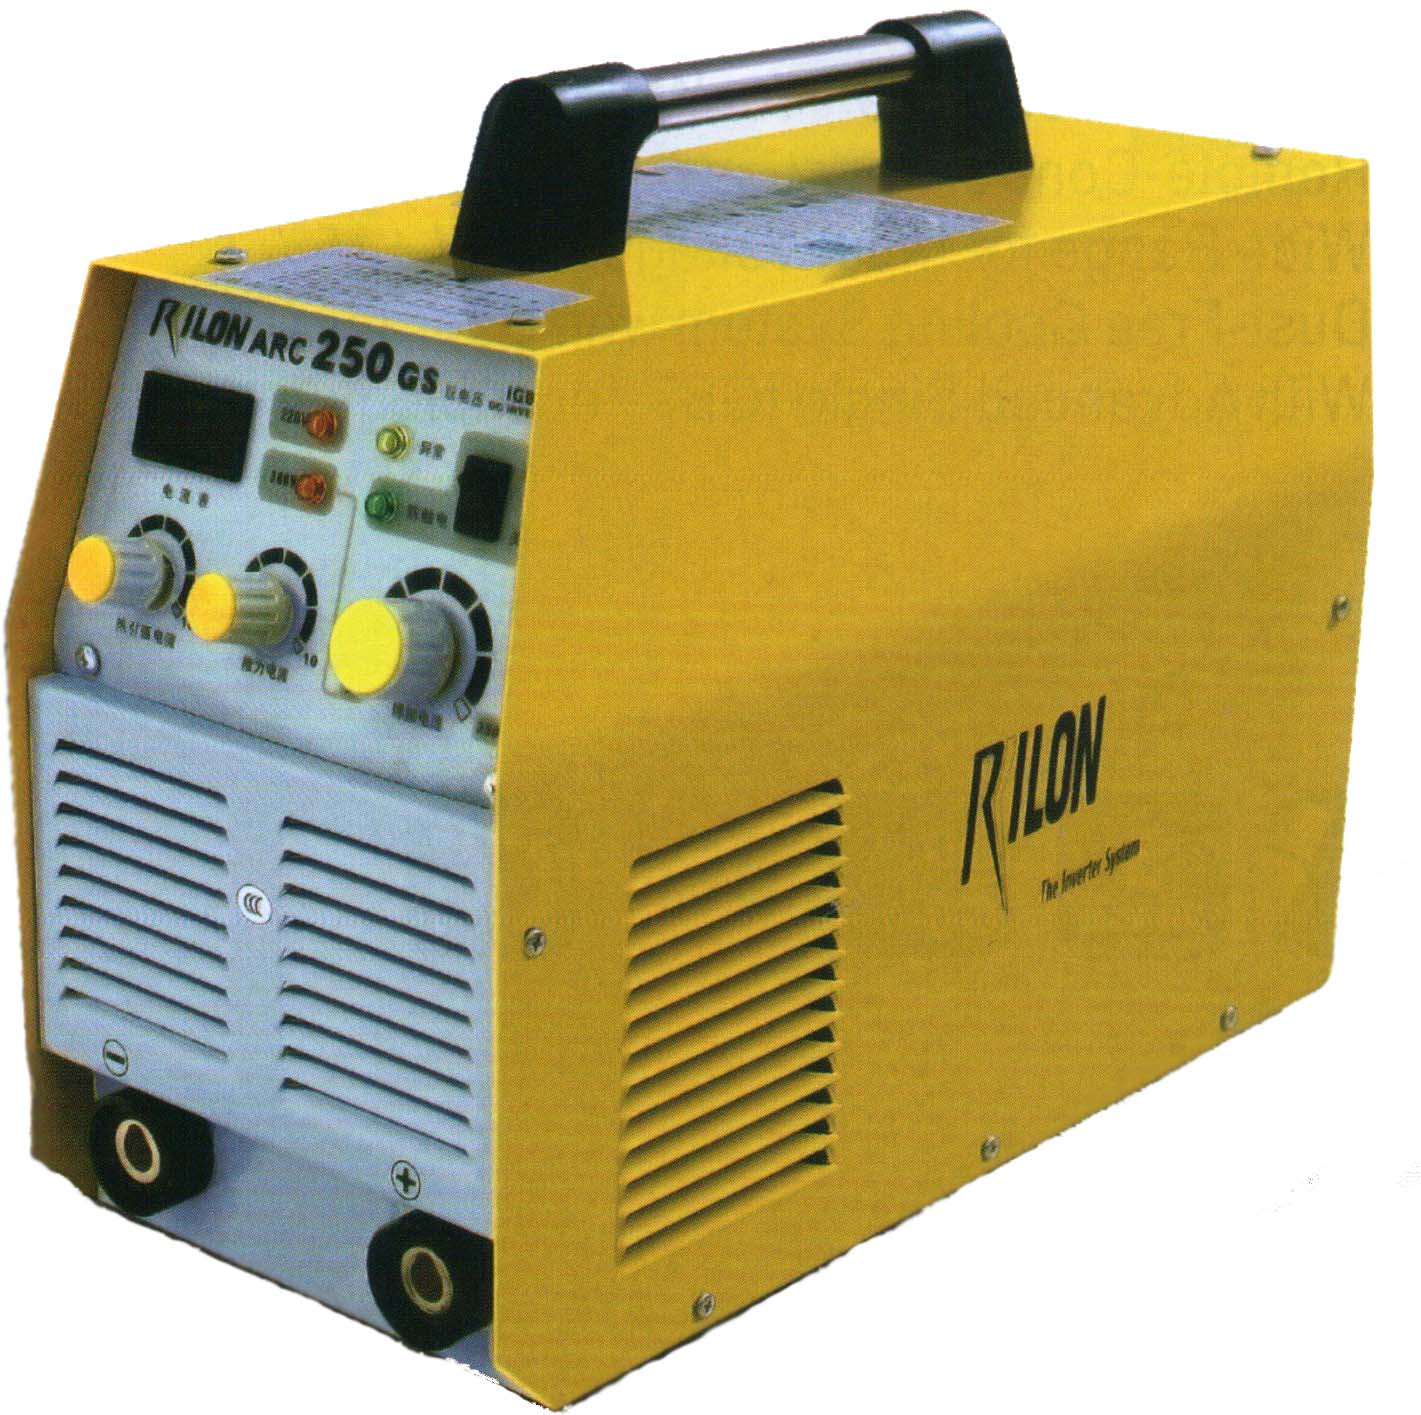 เครื่องเชื่อมไฟฟ้า RIlon ARC250GS